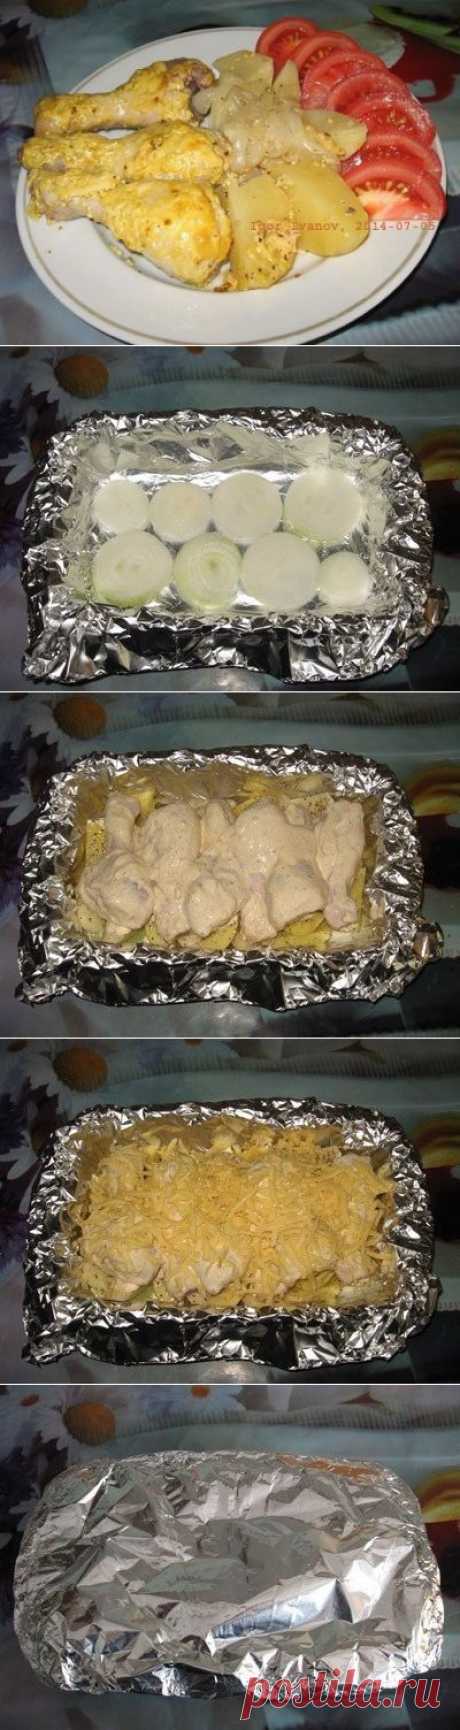 Как приготовить куриные голени с картошкой в фольге в духовке - рецепт, ингридиенты и фотографии